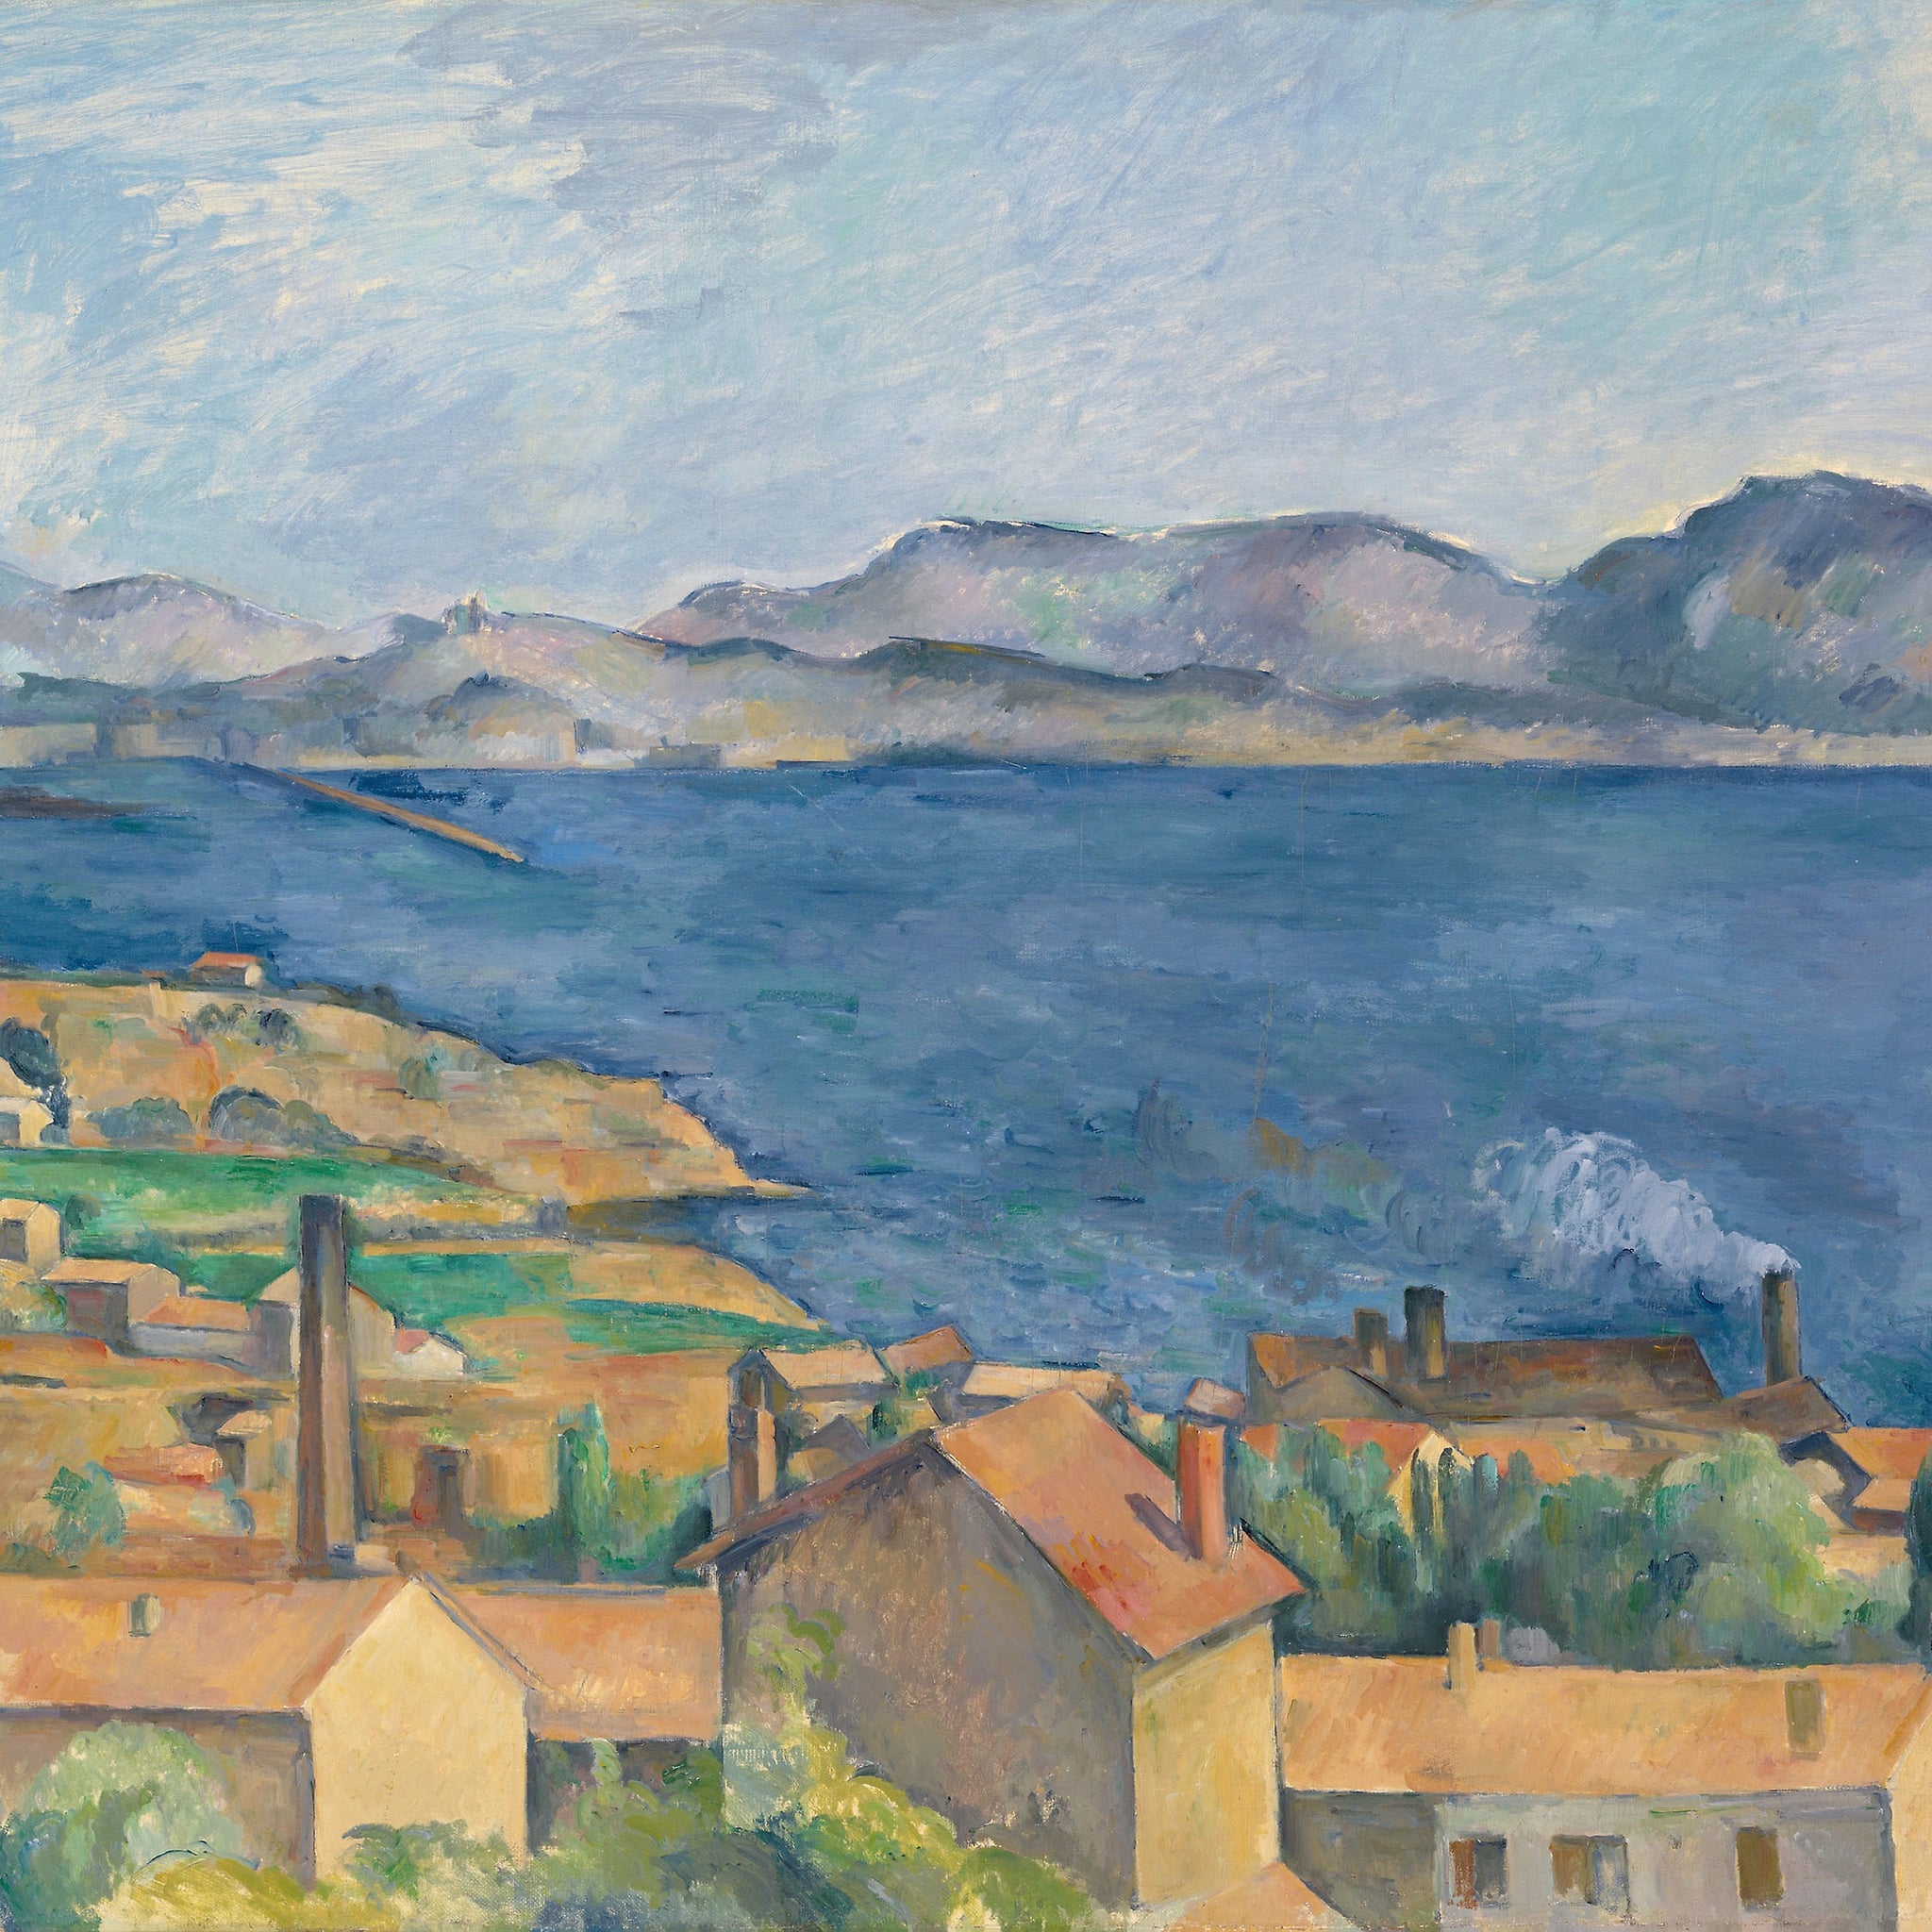 La baie de Marseille, vue de l'Estaque - Paul Cézanne